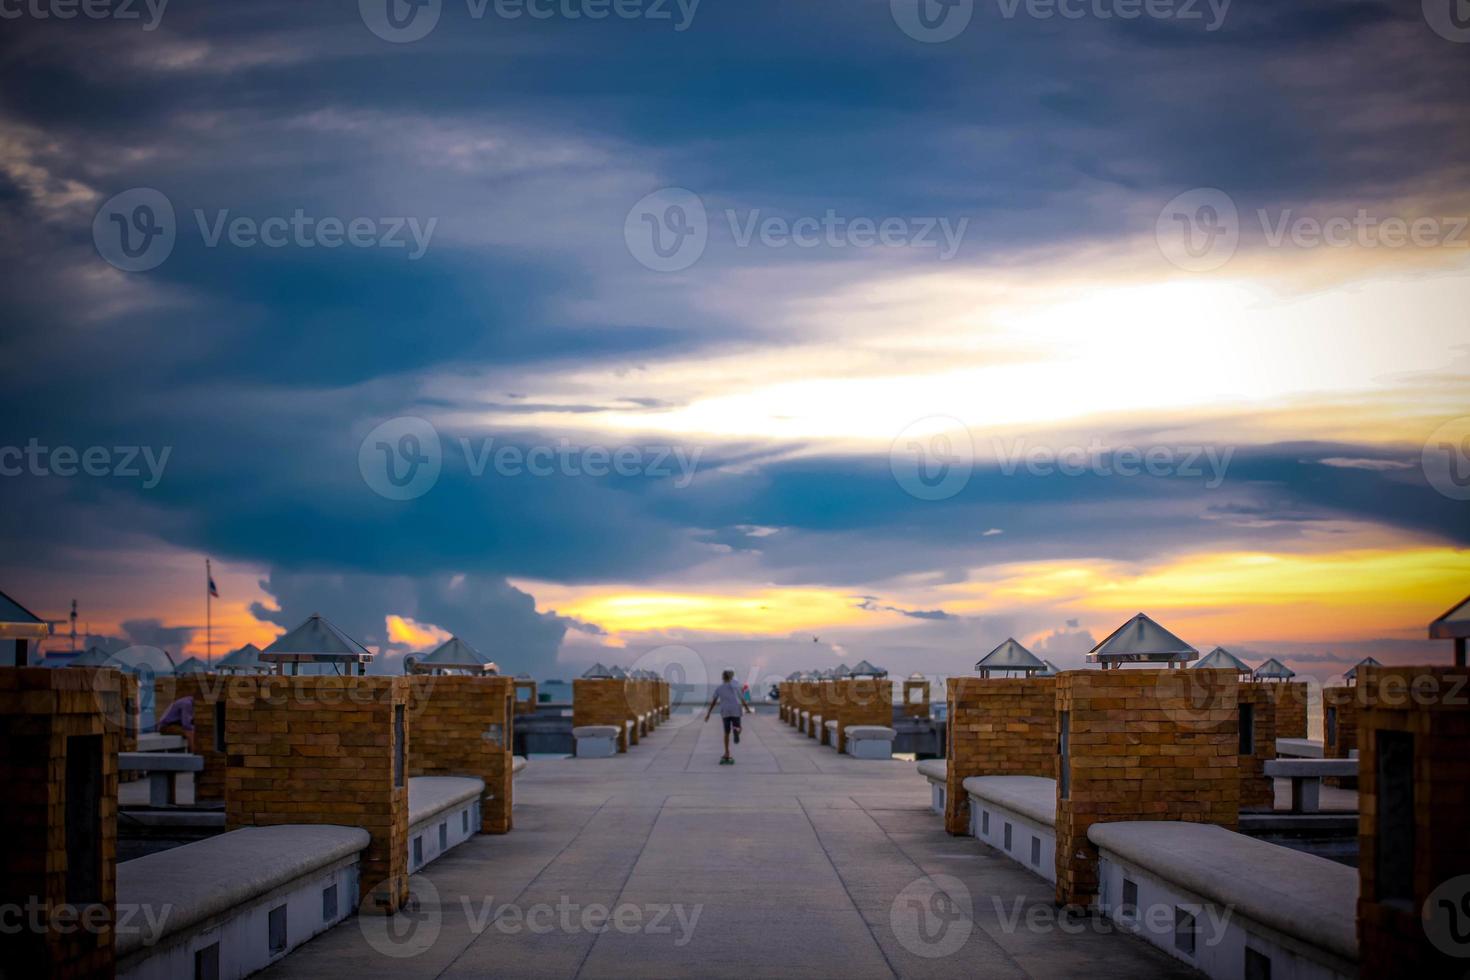 magnifique coucher de soleil sur la mer longue exposition sur la jetée et les promenades en skateboard photo